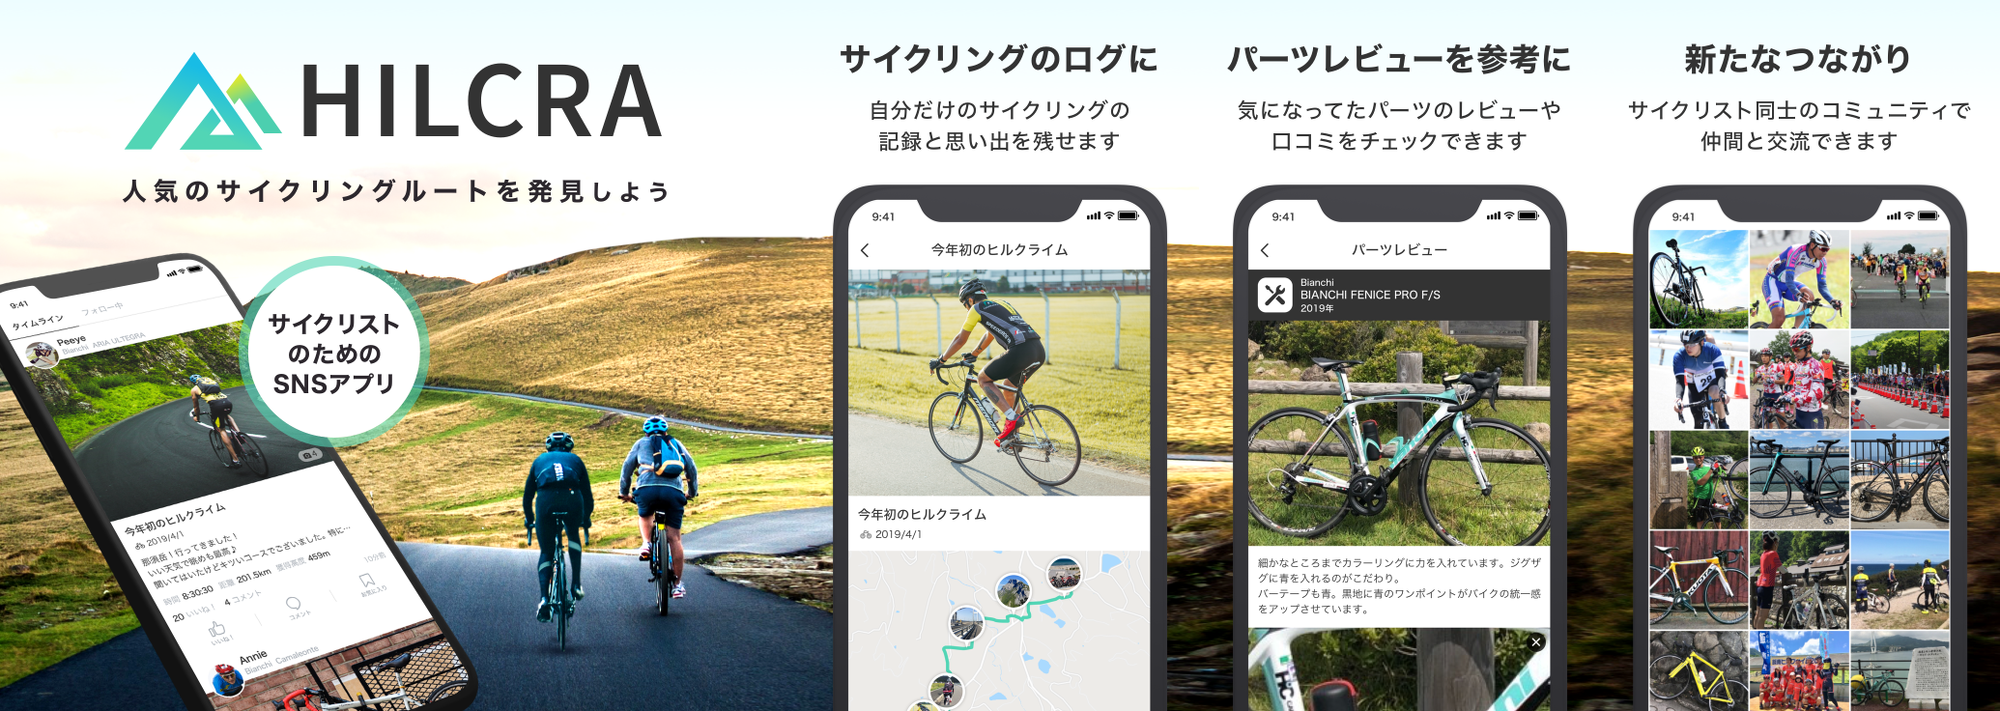 サイクリスト向けsnsアプリ Hilcra 新たなサイクリングメンバーを募れるライド募集機能をリリース クランチタイマー株式会社のプレスリリース